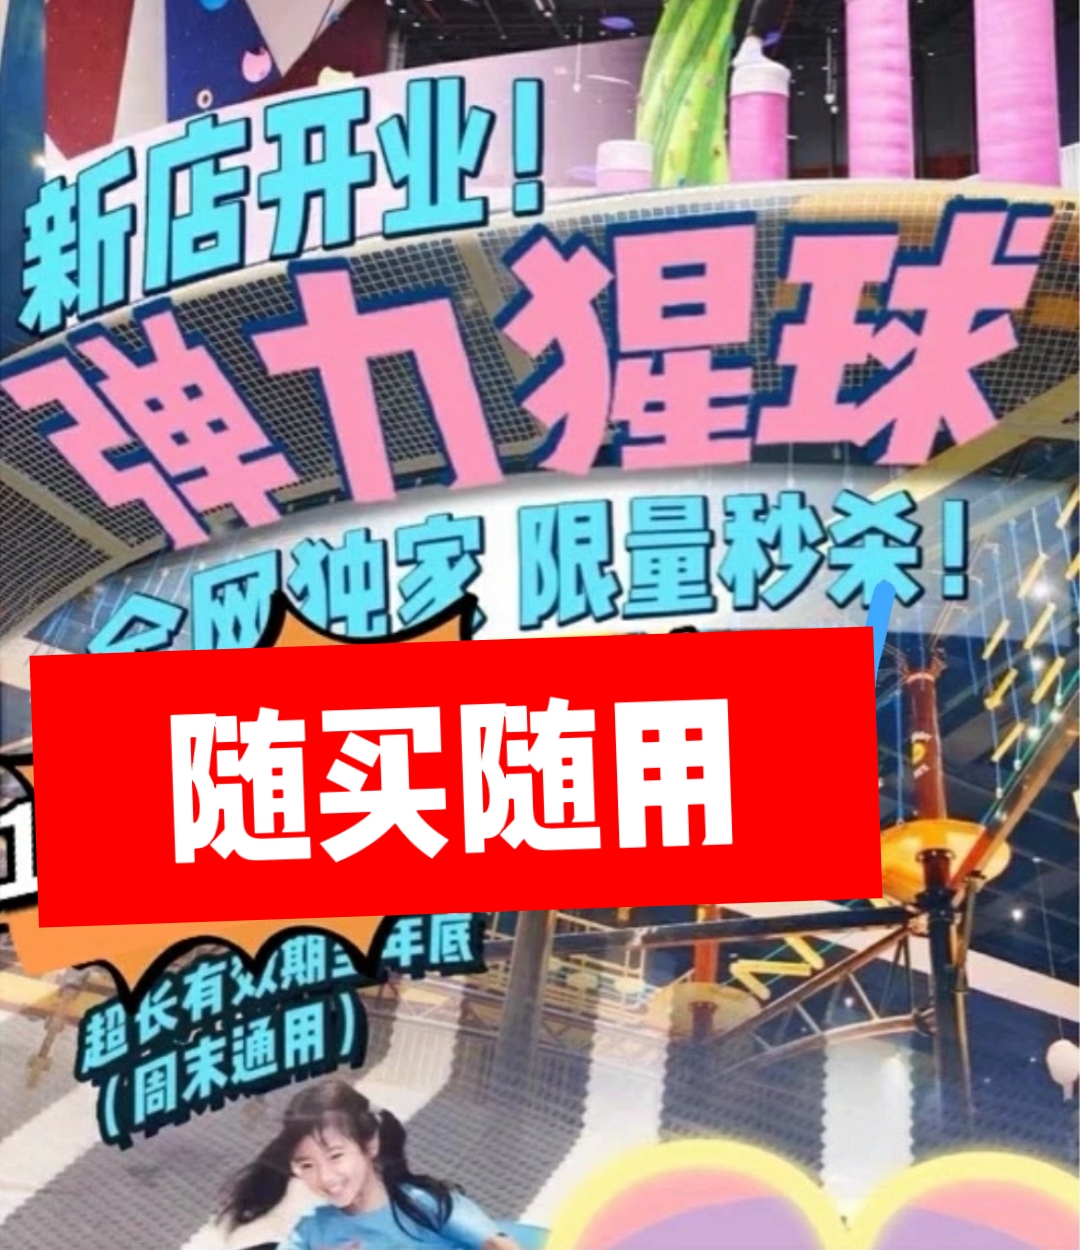 全国弹力猩球上海北京杭州星球运动中心门票印象城太阳宫